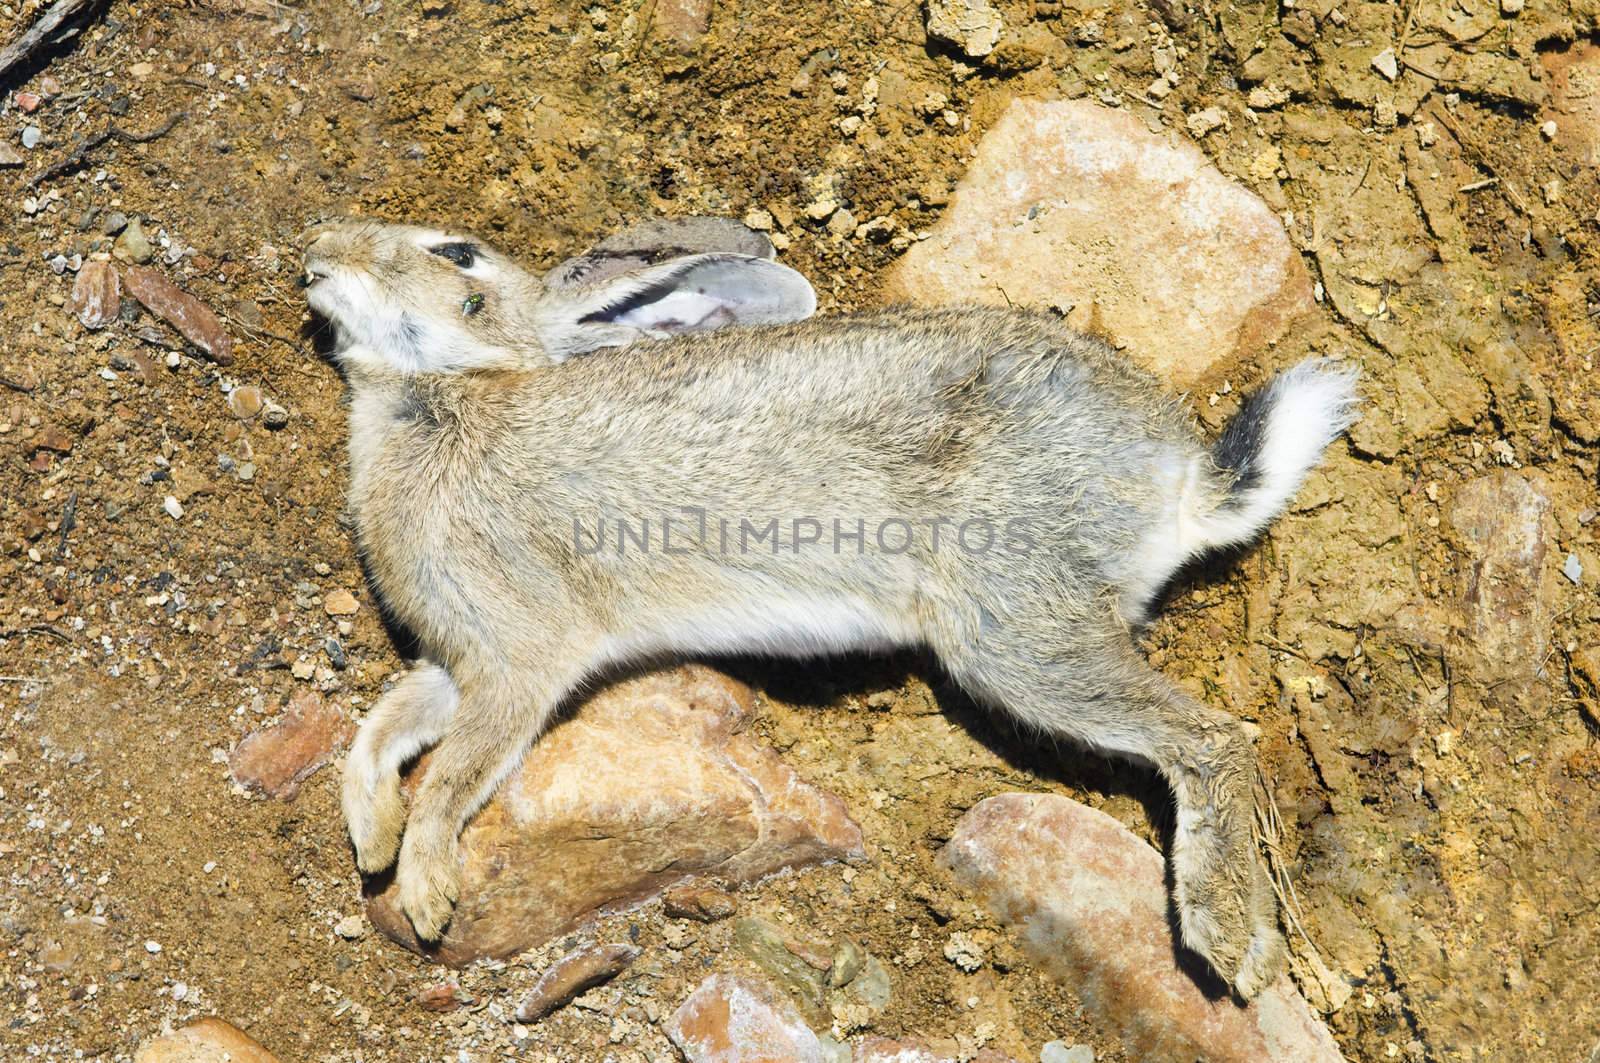 Dead rabbit by mrfotos